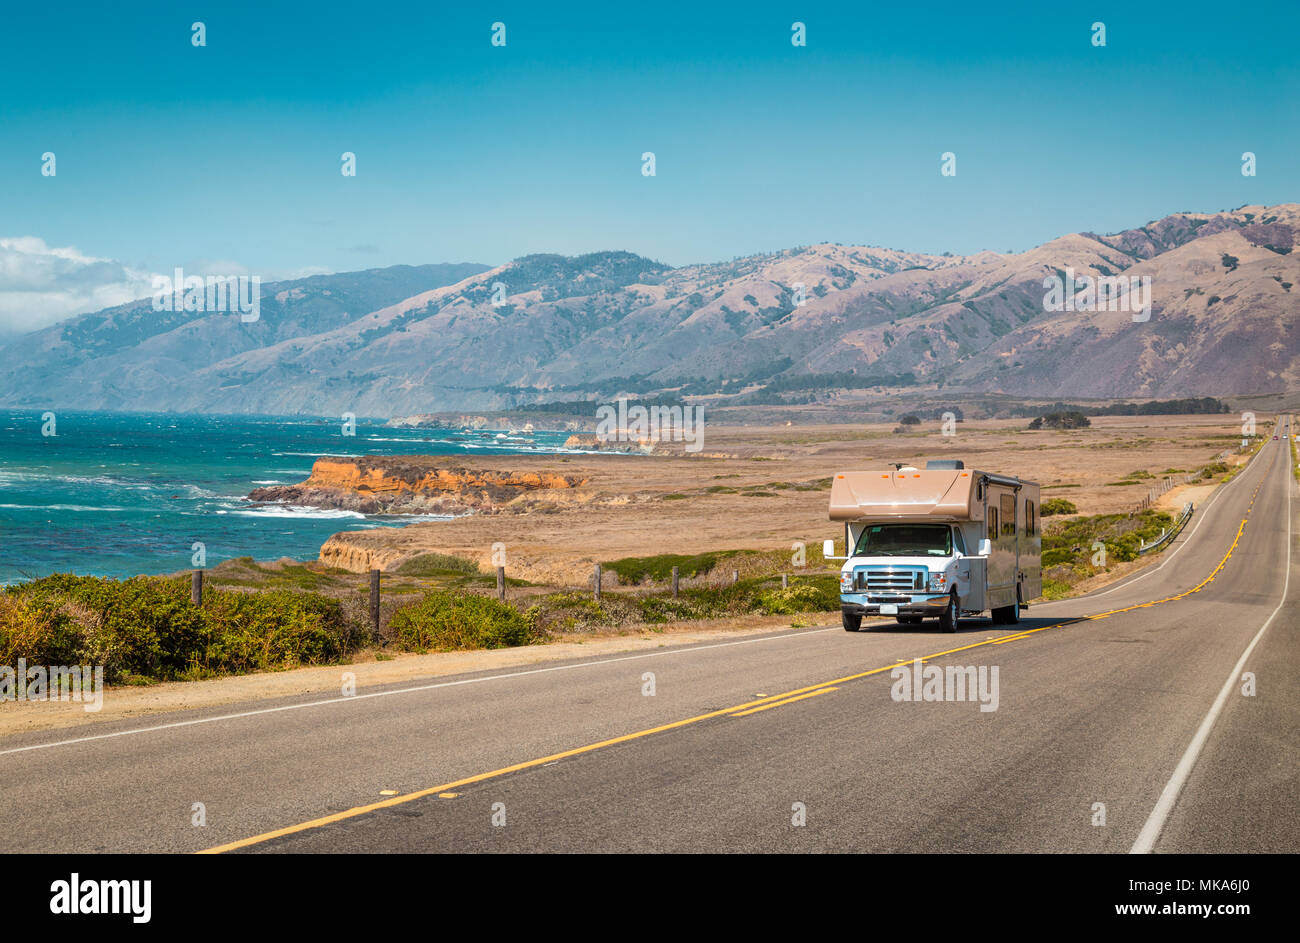 Panorama der Freizeit während der Fahrt auf dem berühmten Highway 1 entlang der wunderschönen Küste von Big Sur, Kalifornien, USA Stockfoto